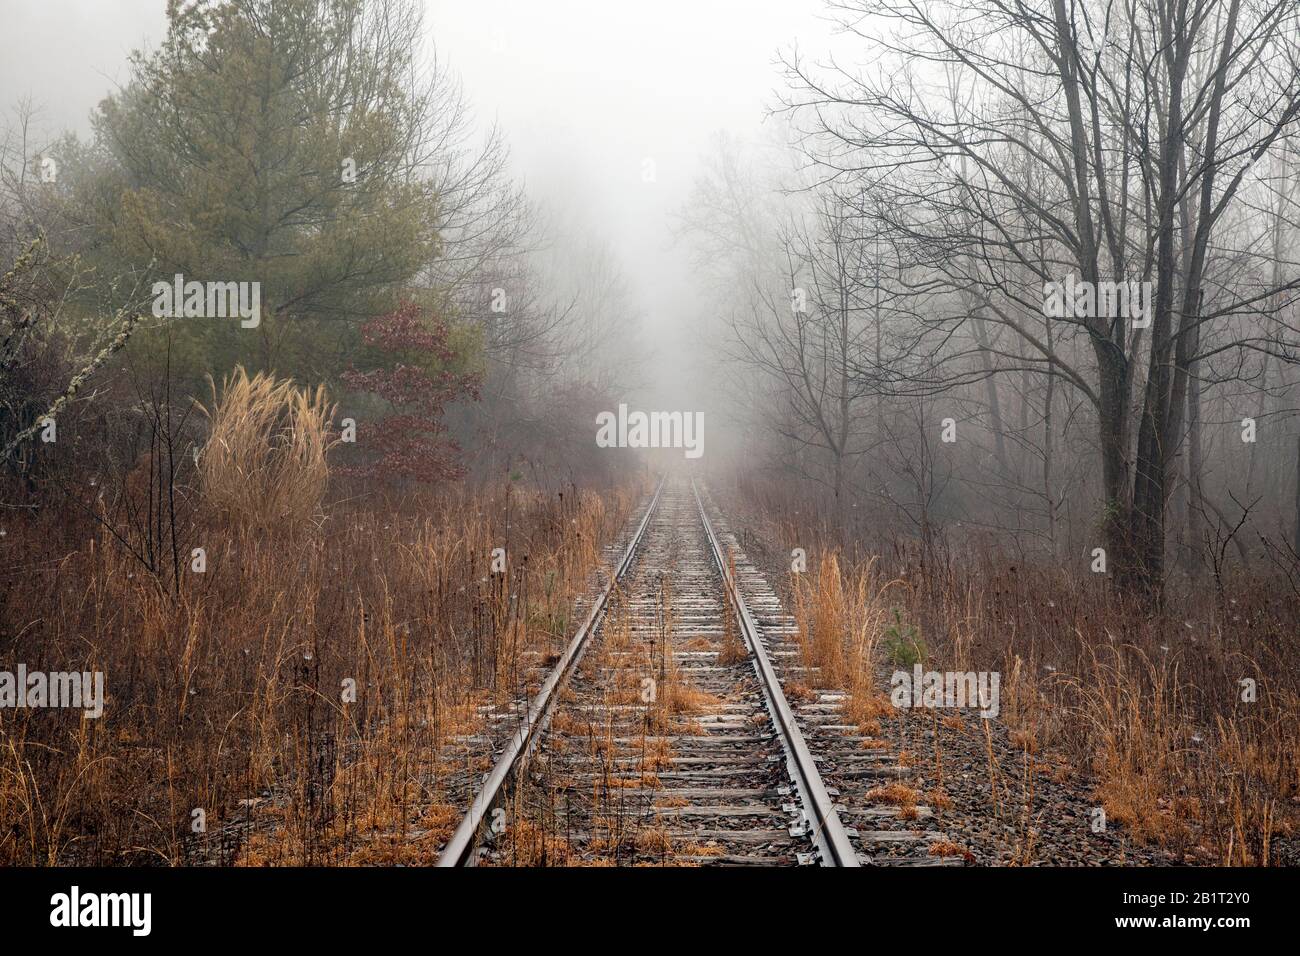 Vías de ferrocarril abandonadas que conducen al bosque en una mañana foggy en Penrose (cerca de Brevard), Carolina del Norte, Estados Unidos Foto de stock